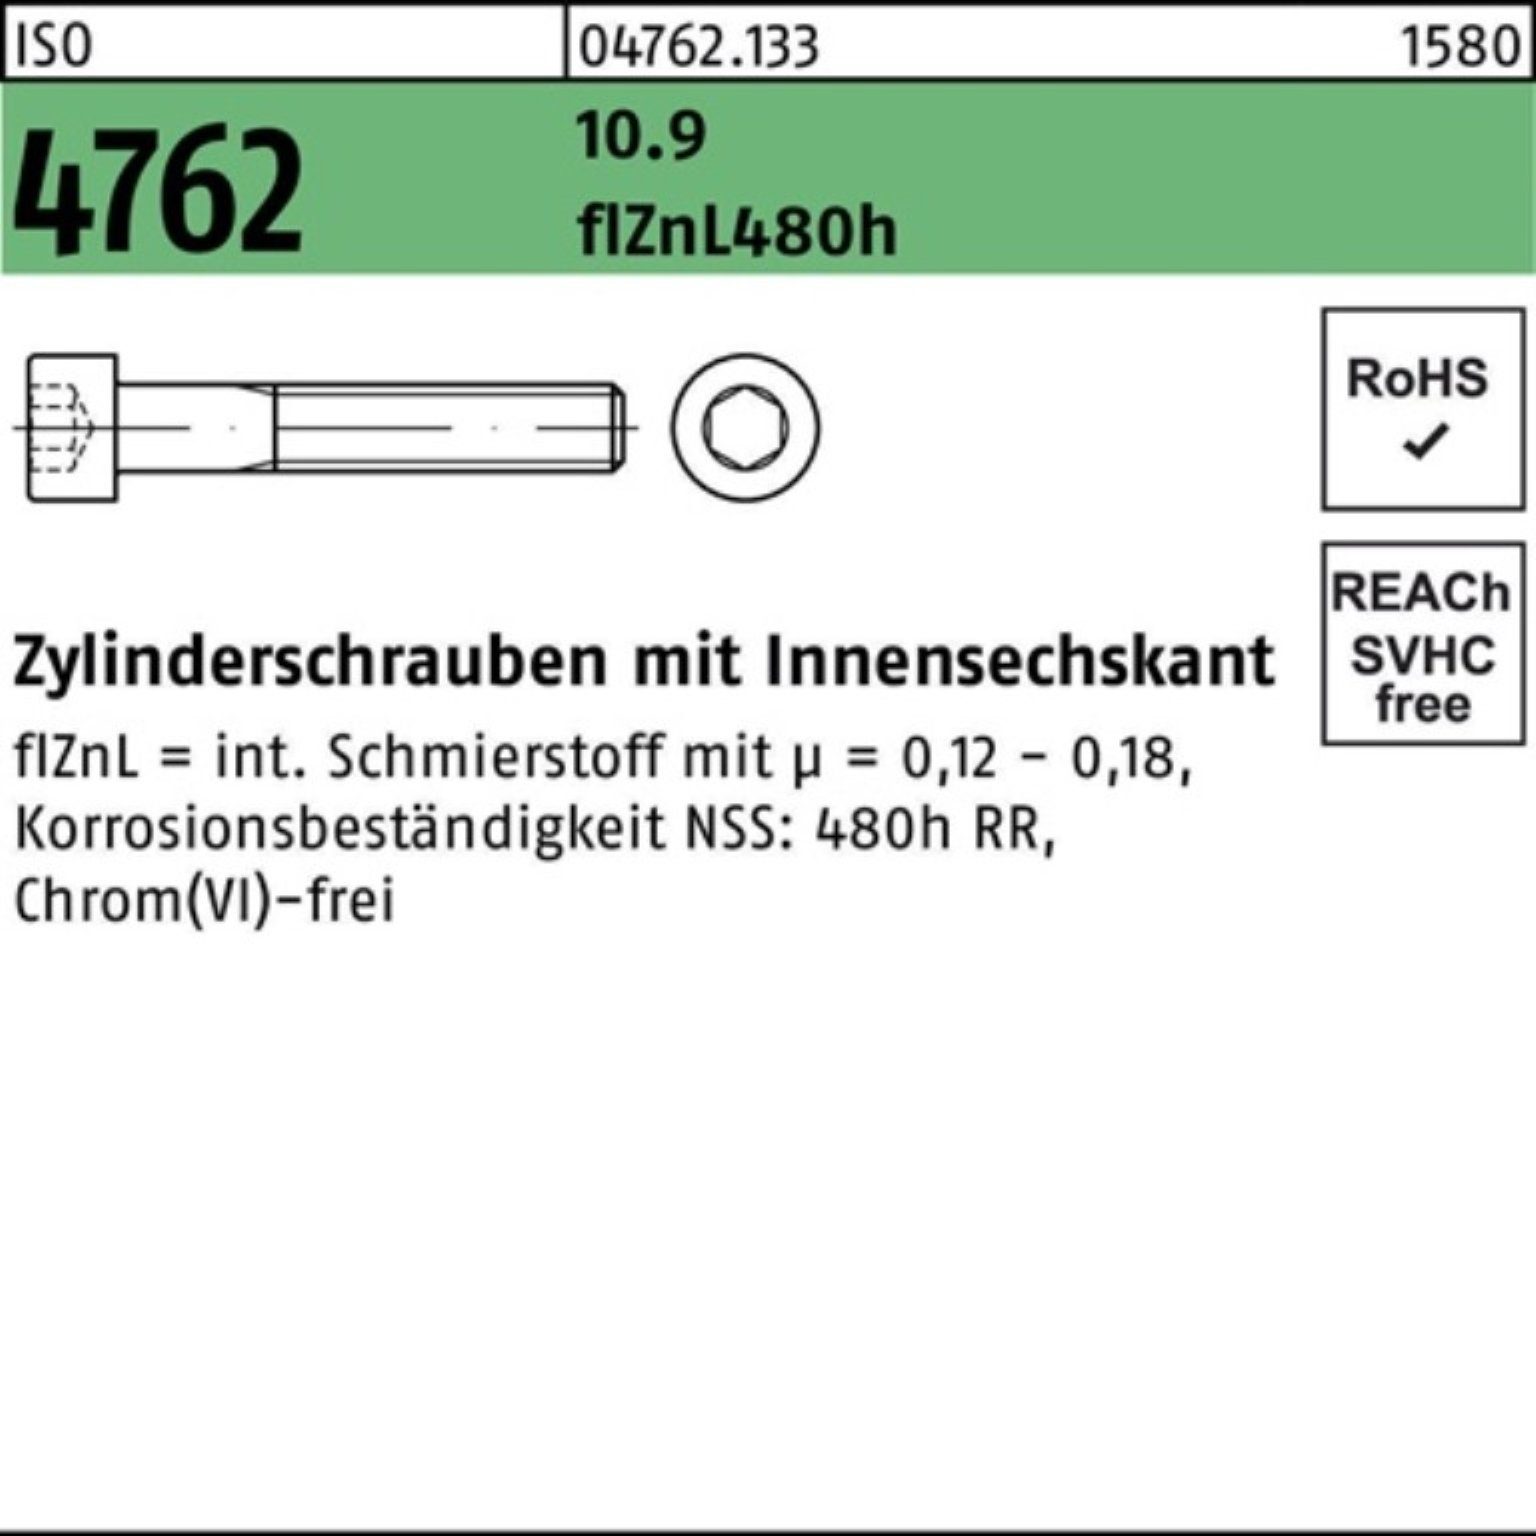 Pack 100er Zylinderschraube 10.9 Zylinderschraube Innen-6kt ISO Reyher M24x300 4762 zinklamell